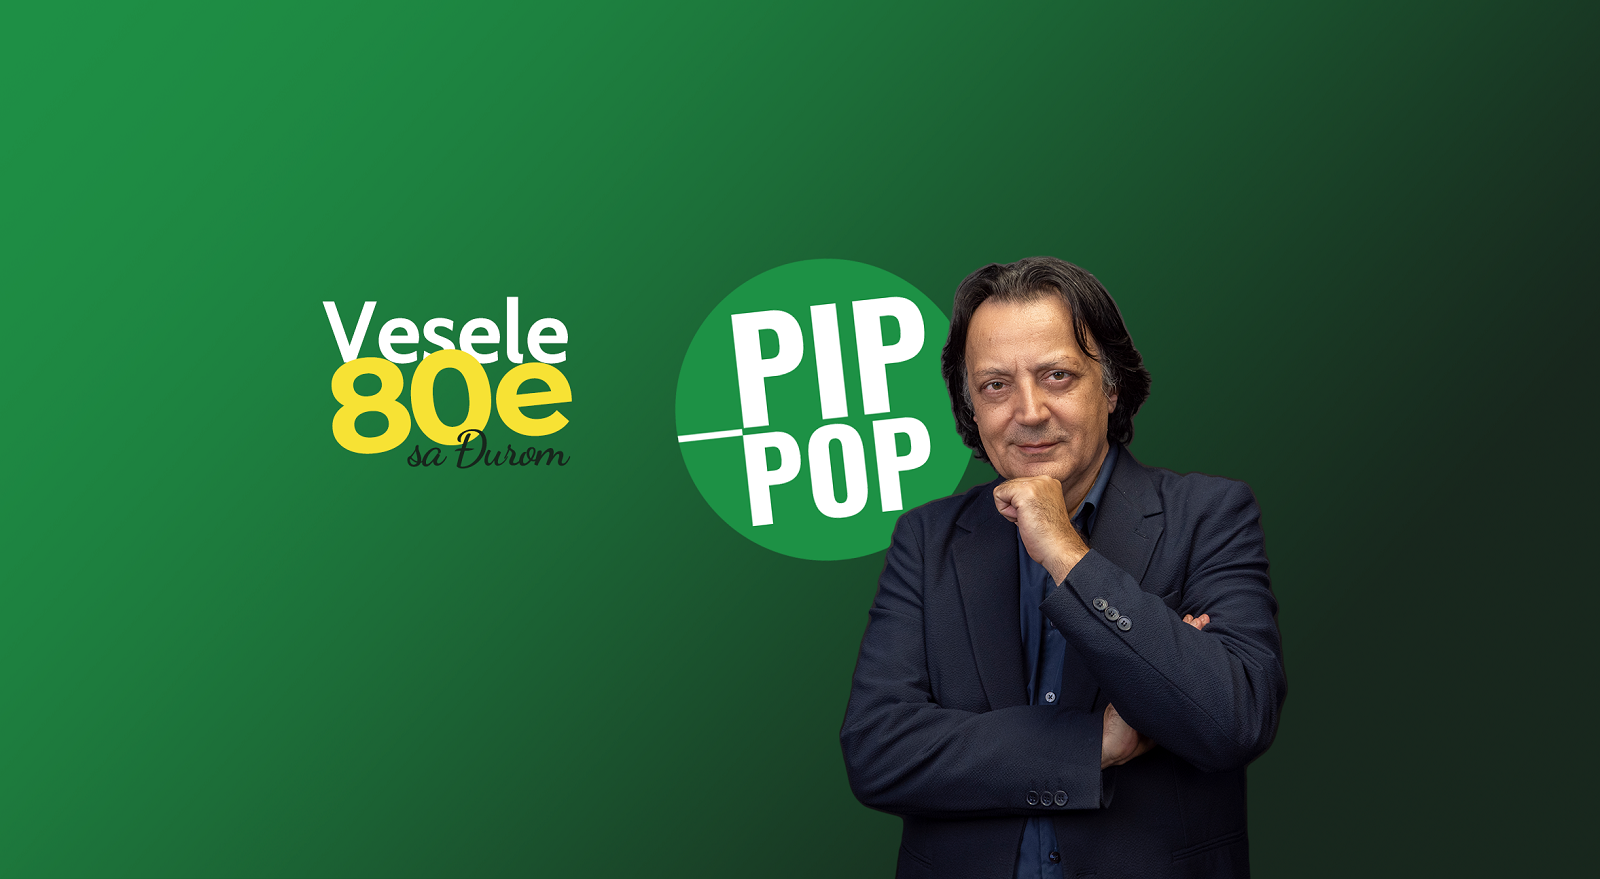 Stigao je podkast „Vesele 80e sa Đurom PIP POP“ sa Kikijem Lesendrićem